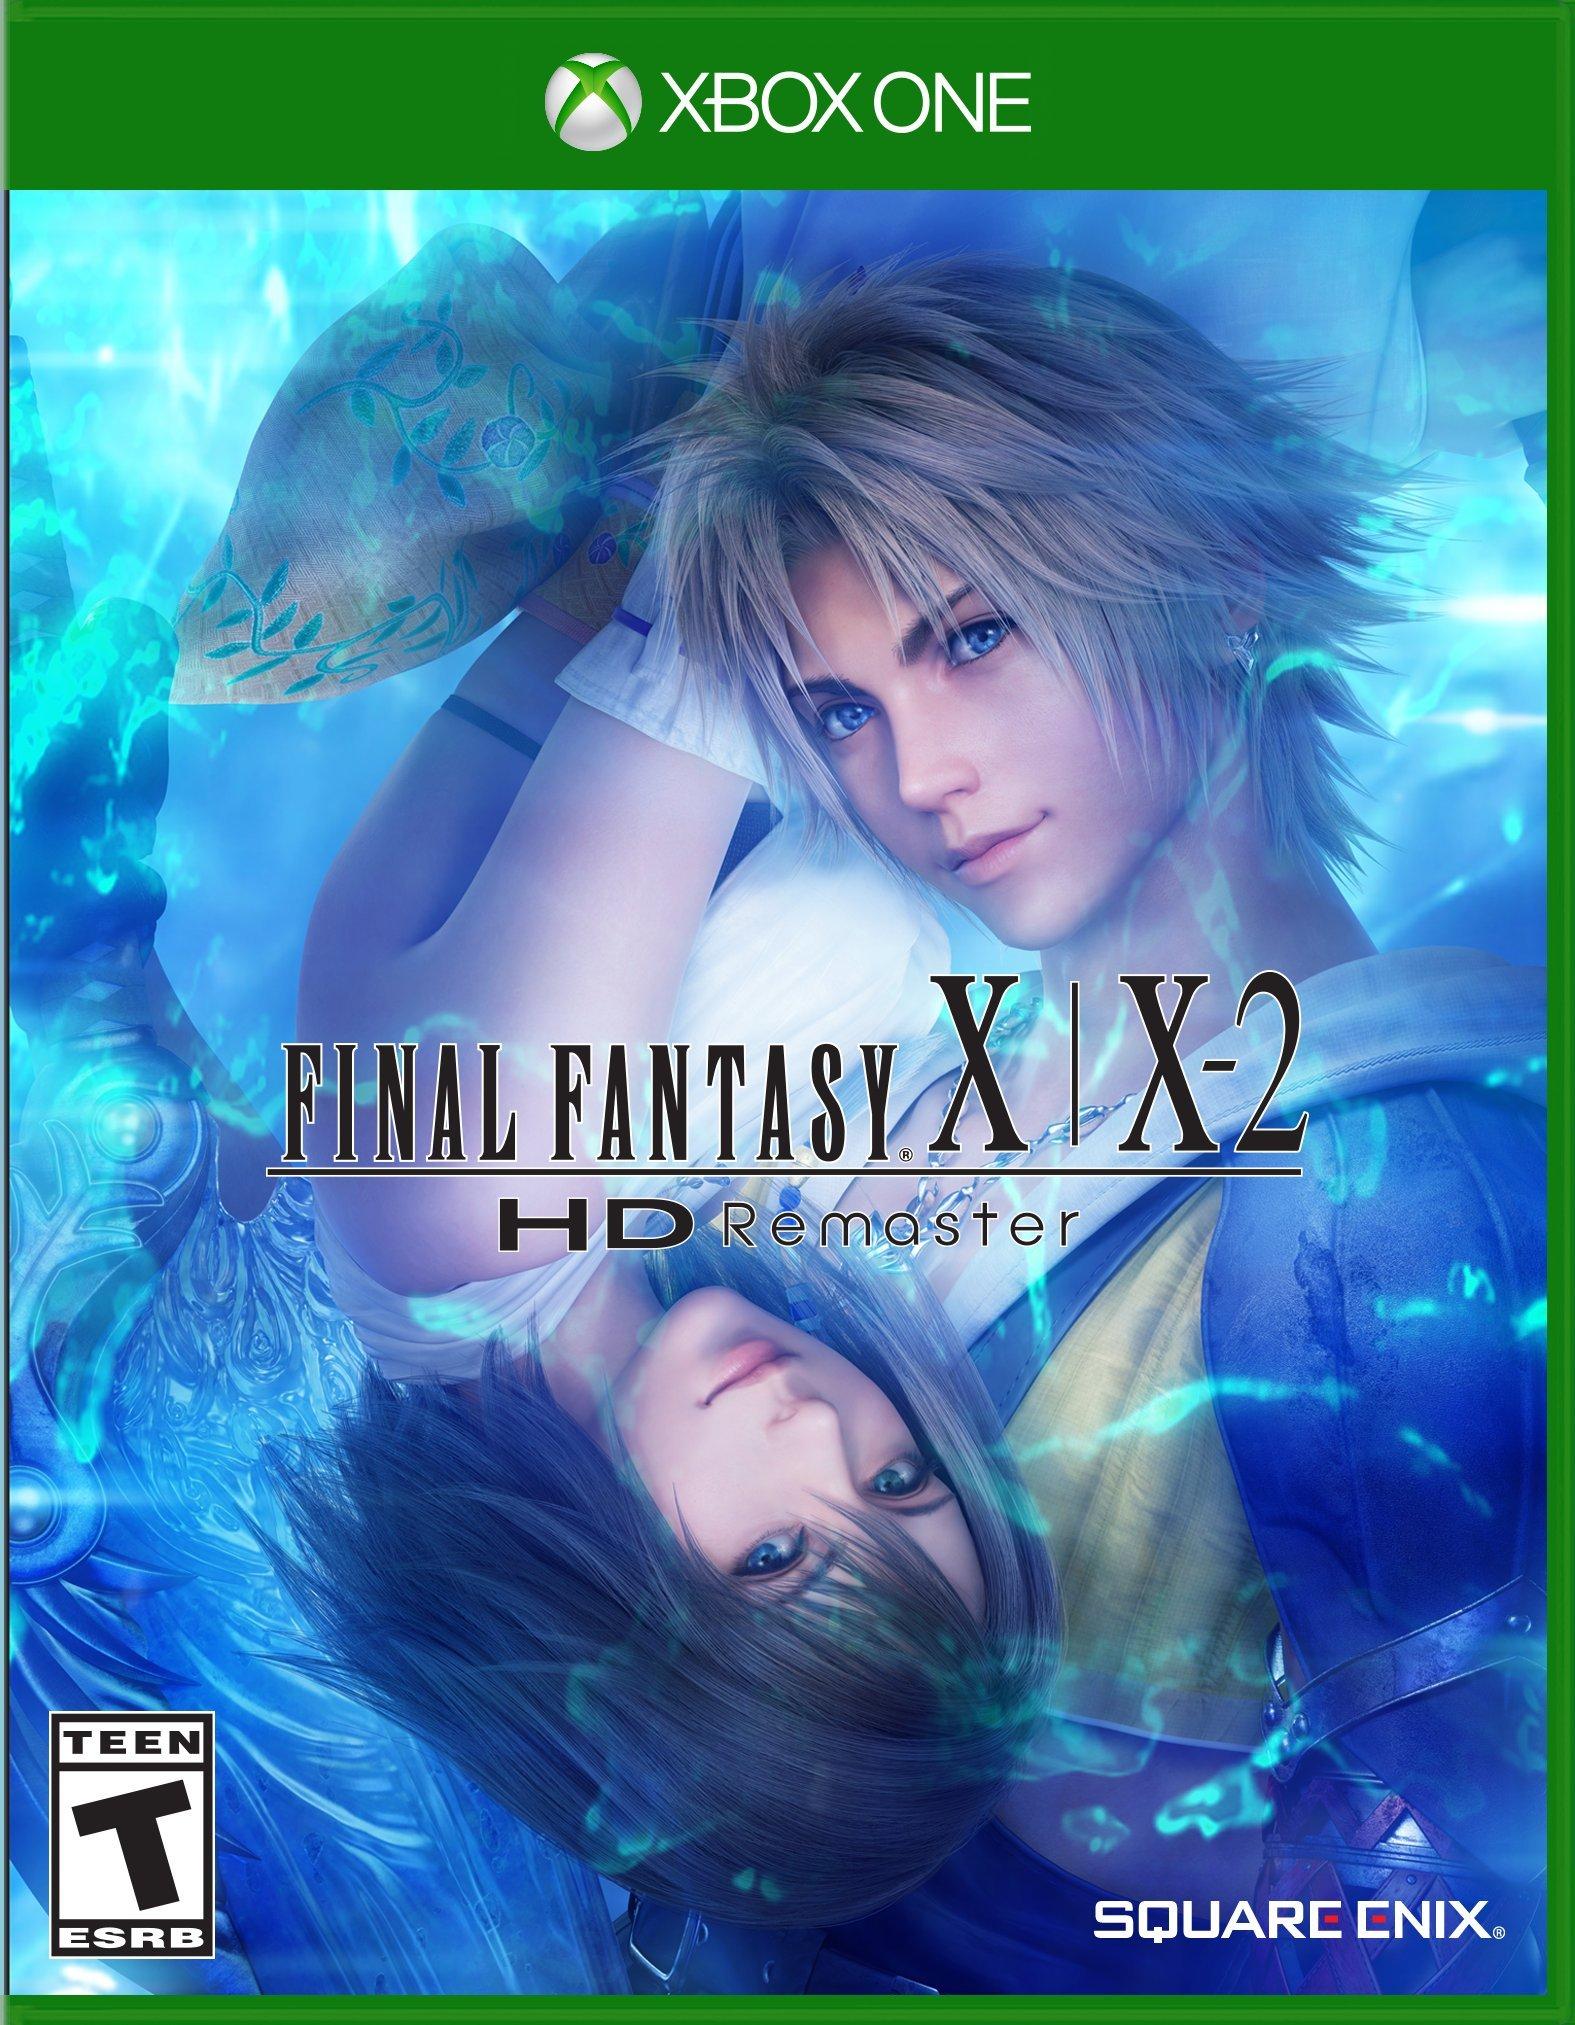 Final Fantasy X-X2 Remaster - Xbox One | Square Enix | GameStop